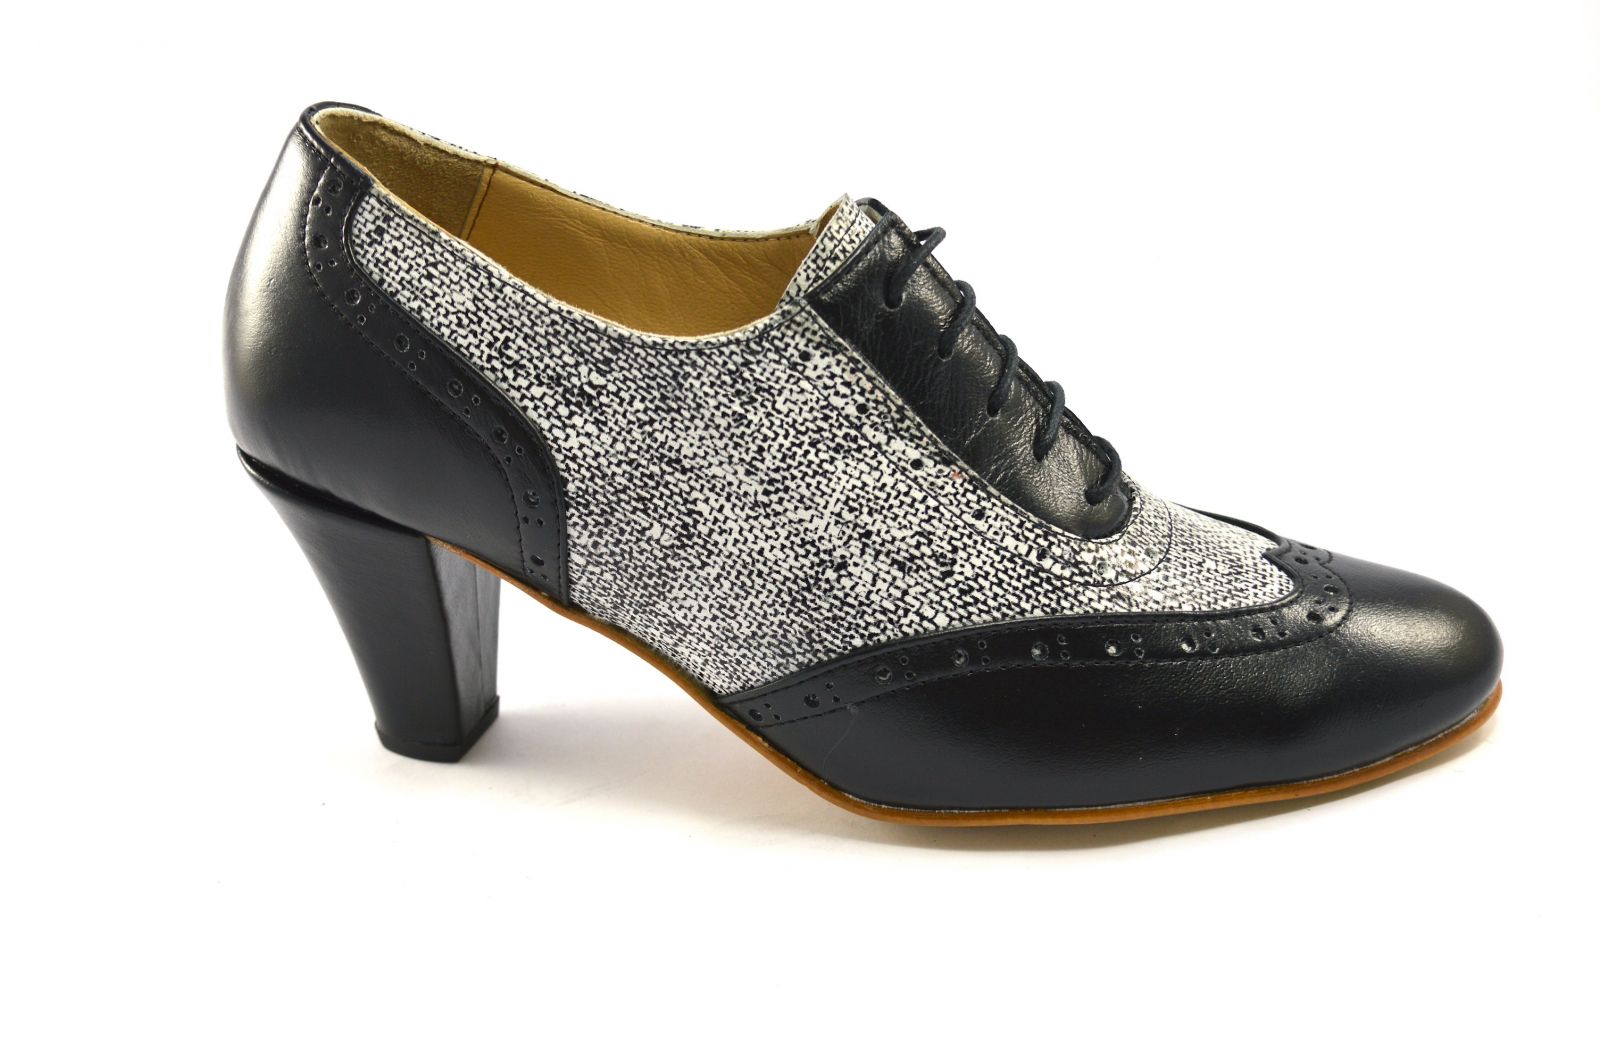 Γυναικείο παπούτσι tango κλειστού τύπου από μαλακό μαύρο δέρμα